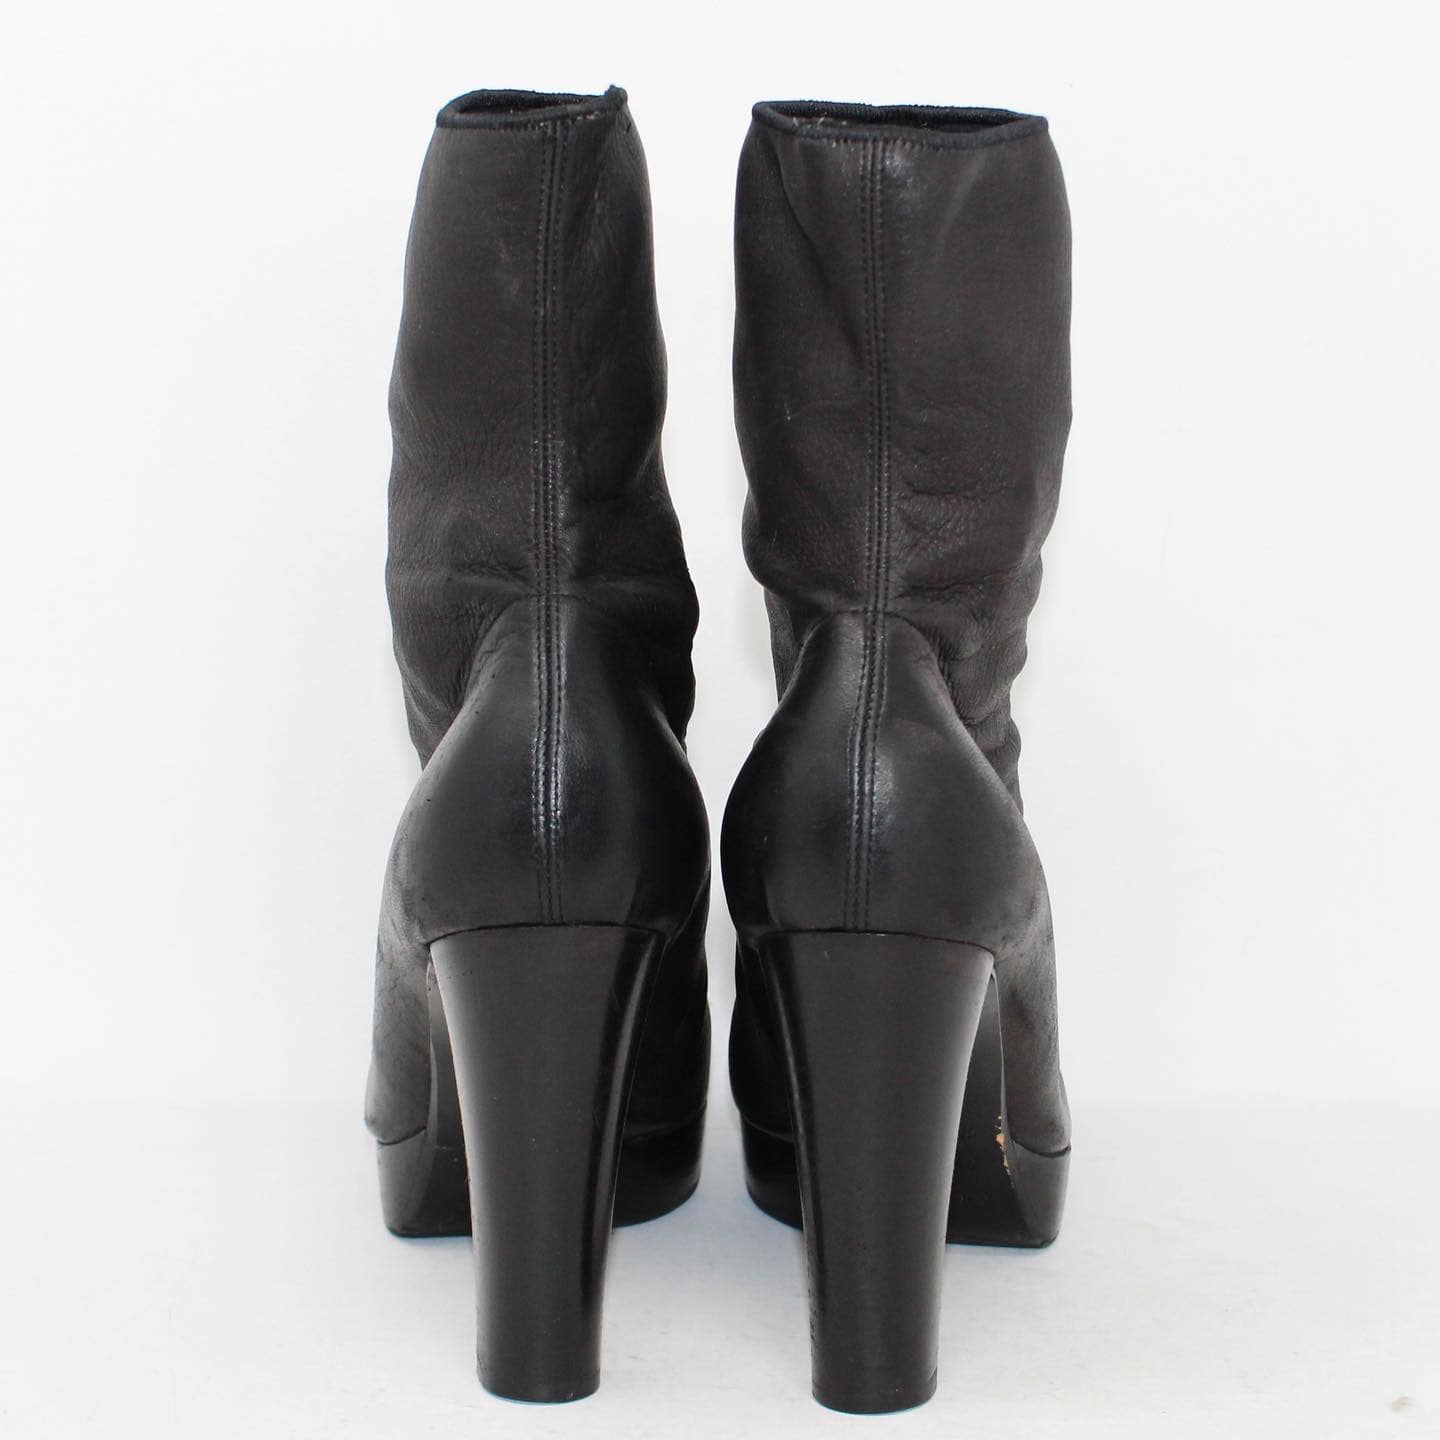 CELINE 39880 Black Leather Platform Heel Booties US 9.5 EU 39.5 d